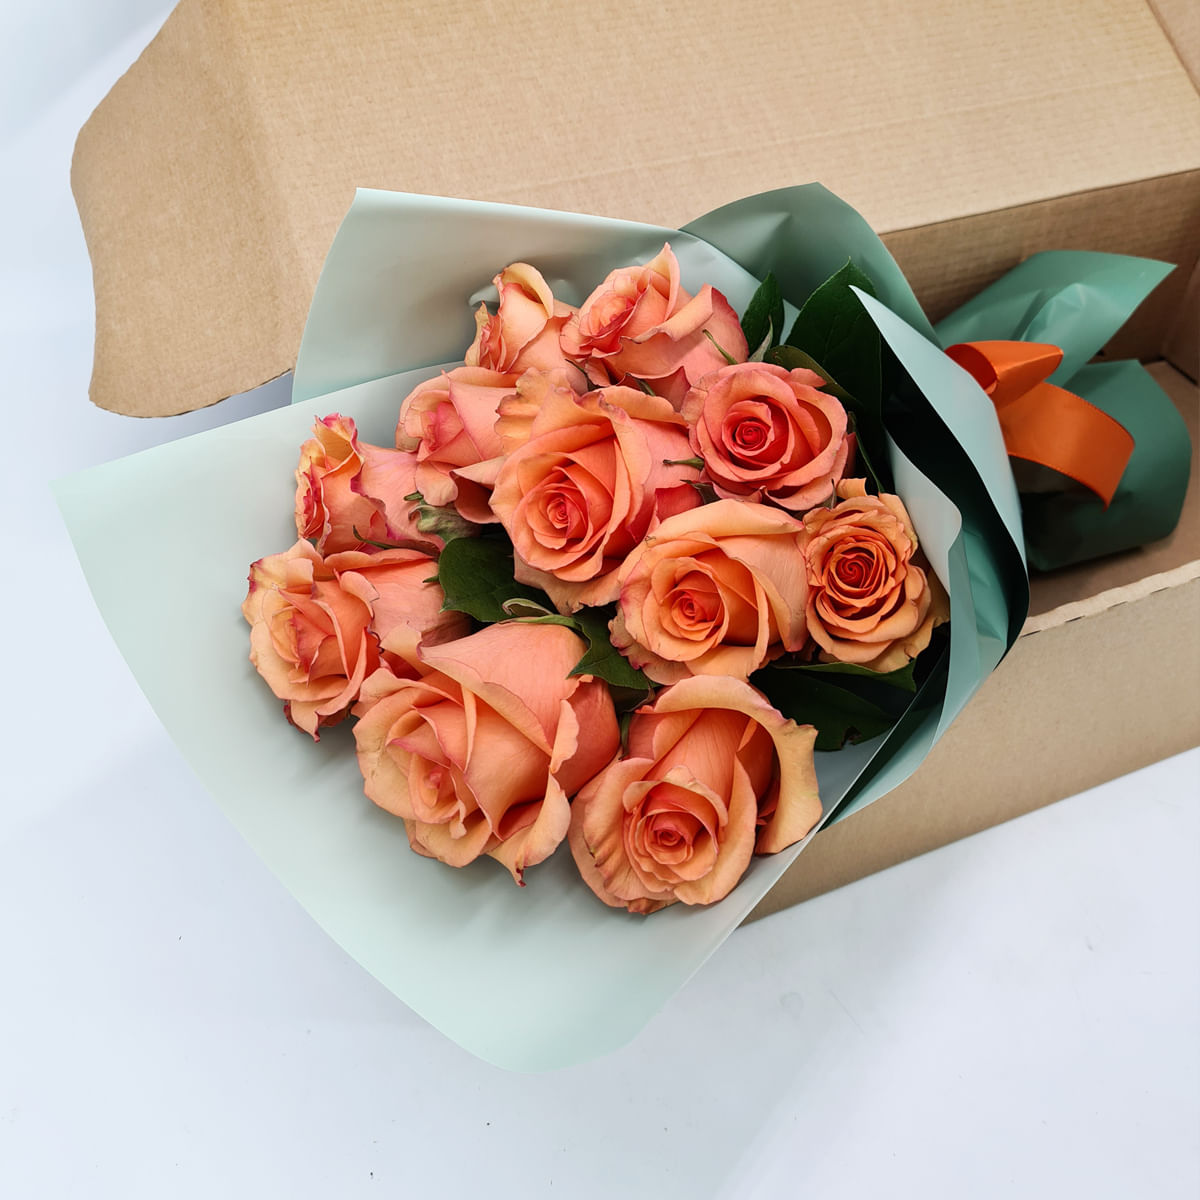 Buchet de 11 trandafiri portocalii in cutie